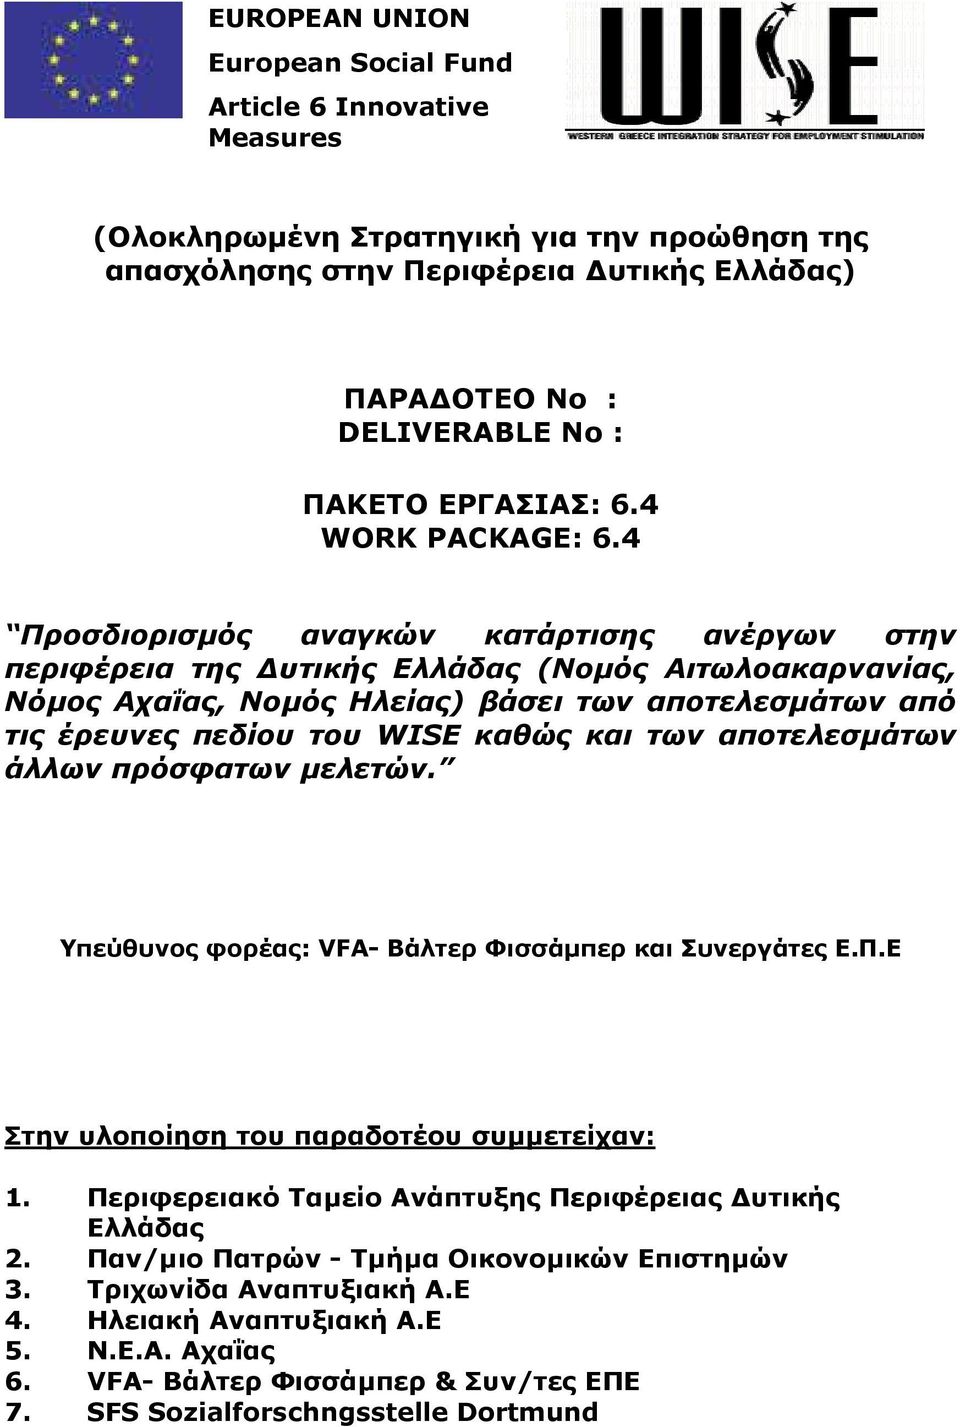 4 Προσδιορισµός αναγκών κατάρτισης ανέργων στην περιφέρεια της υτικής Ελλάδας (Νοµός Αιτωλοακαρνανίας, Νόµος Αχαΐας, Νοµός Ηλείας) βάσει των αποτελεσµάτων από τις έρευνες πεδίου του WISΕ καθώς και